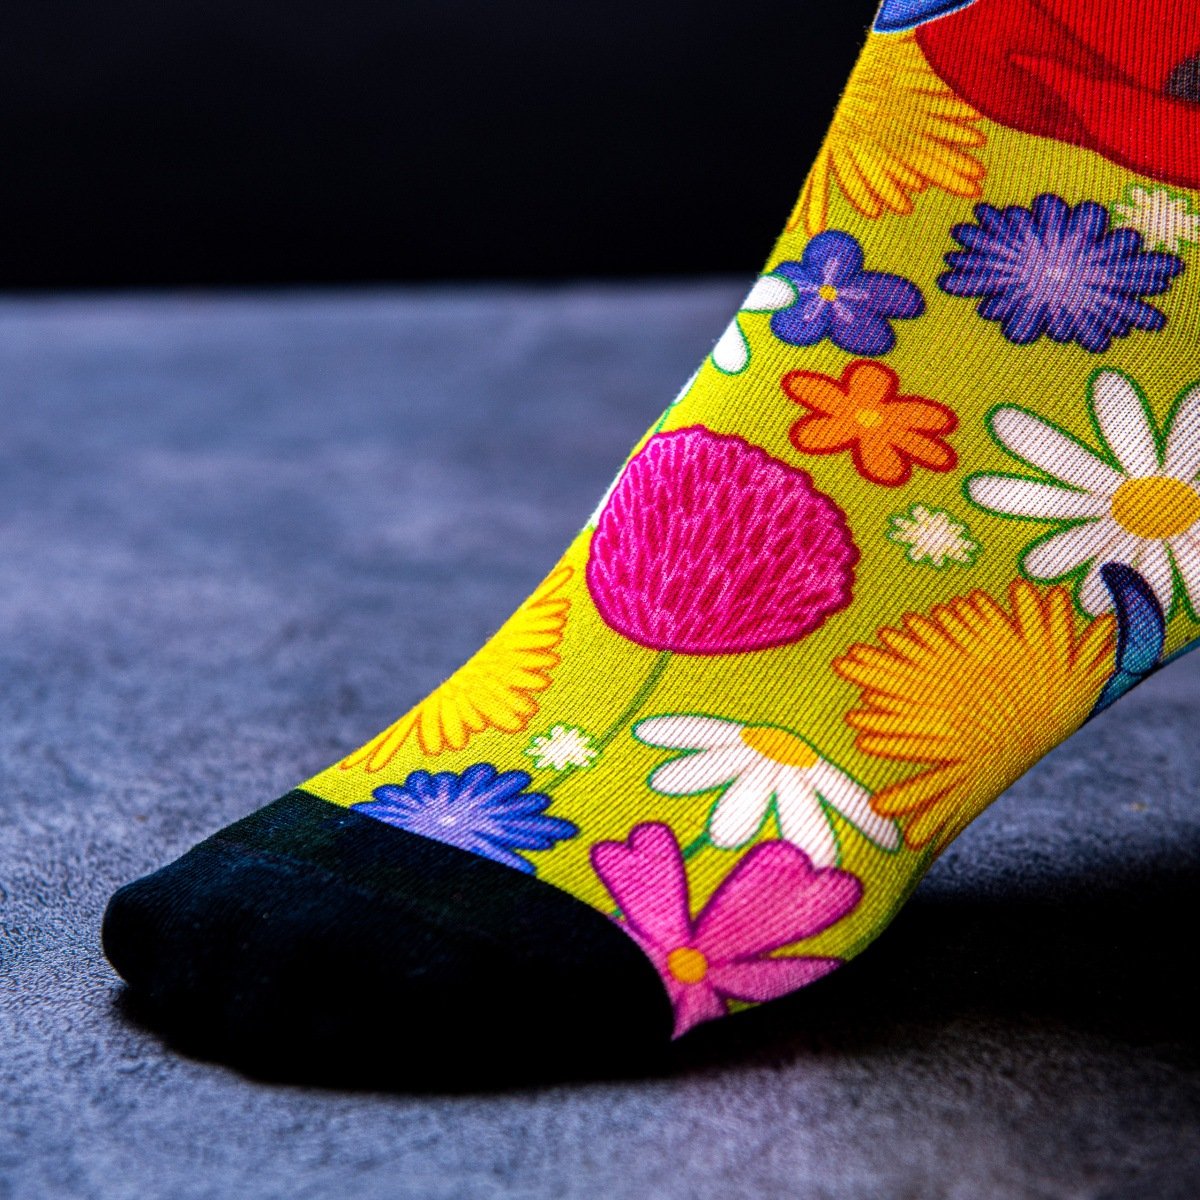 Květinová plechovka s květinovými ponožkami Soxboxeo